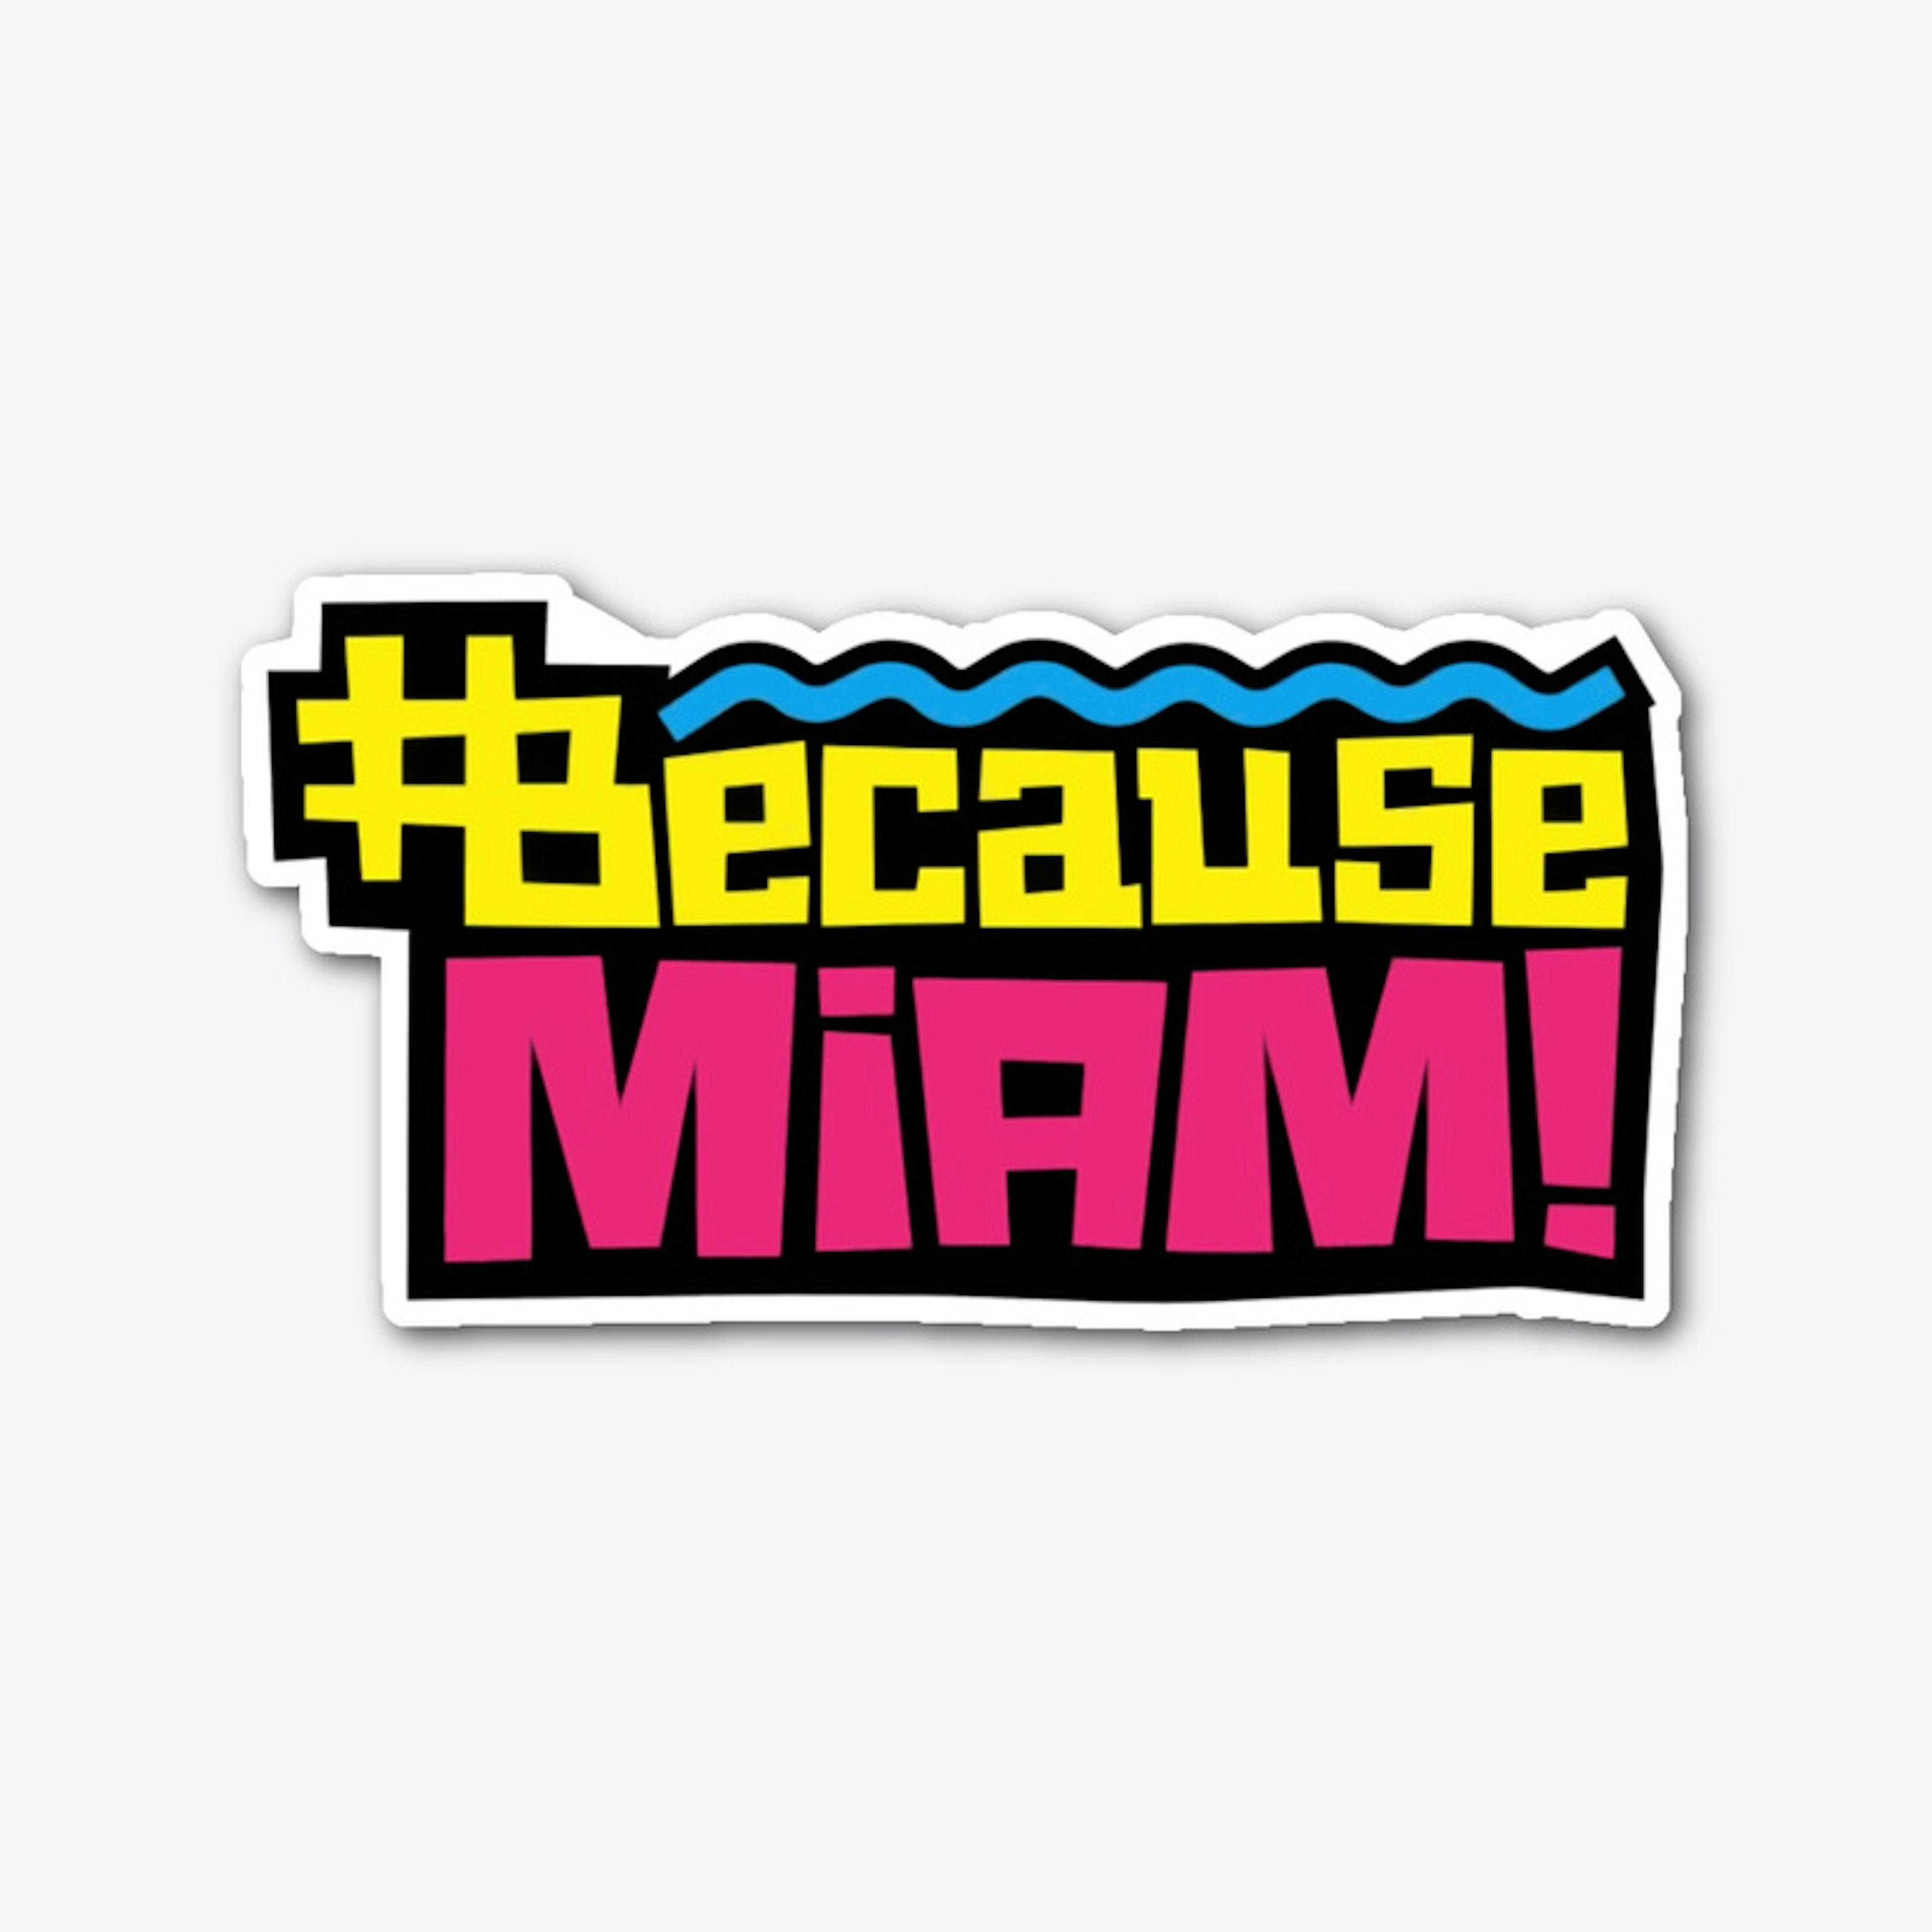 Because Miami Die Cut Sticker